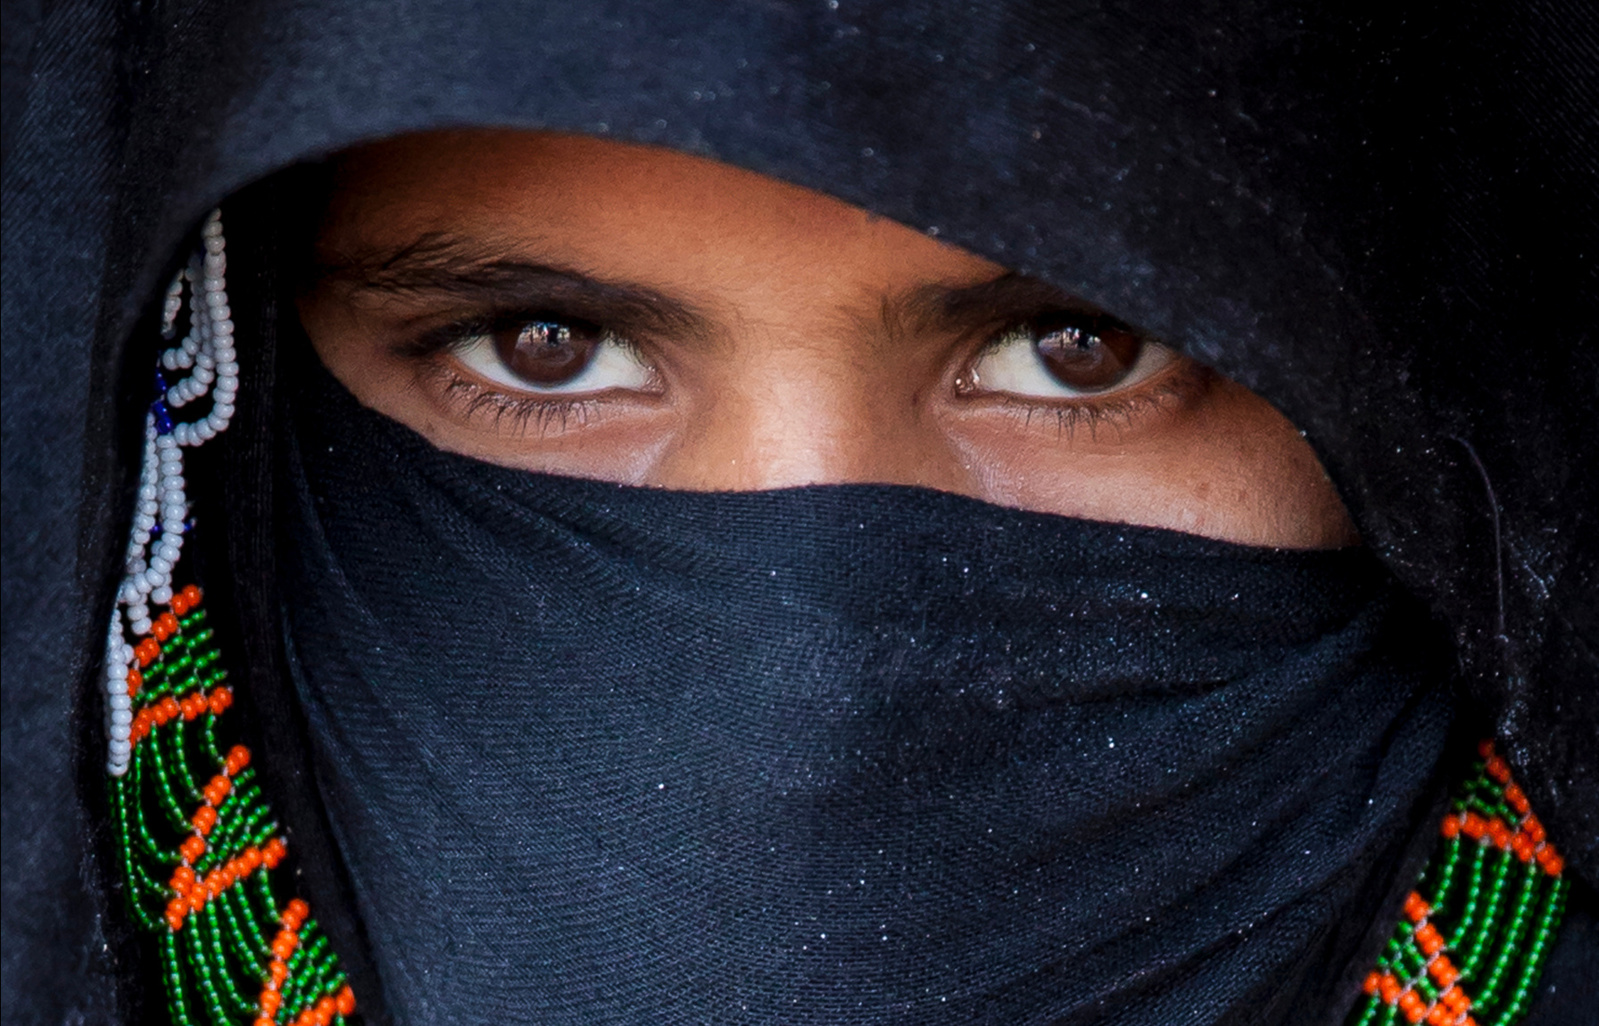 En beduinkvinna fotograferad i Egypten / A Bedouin woman photographed in Egypt